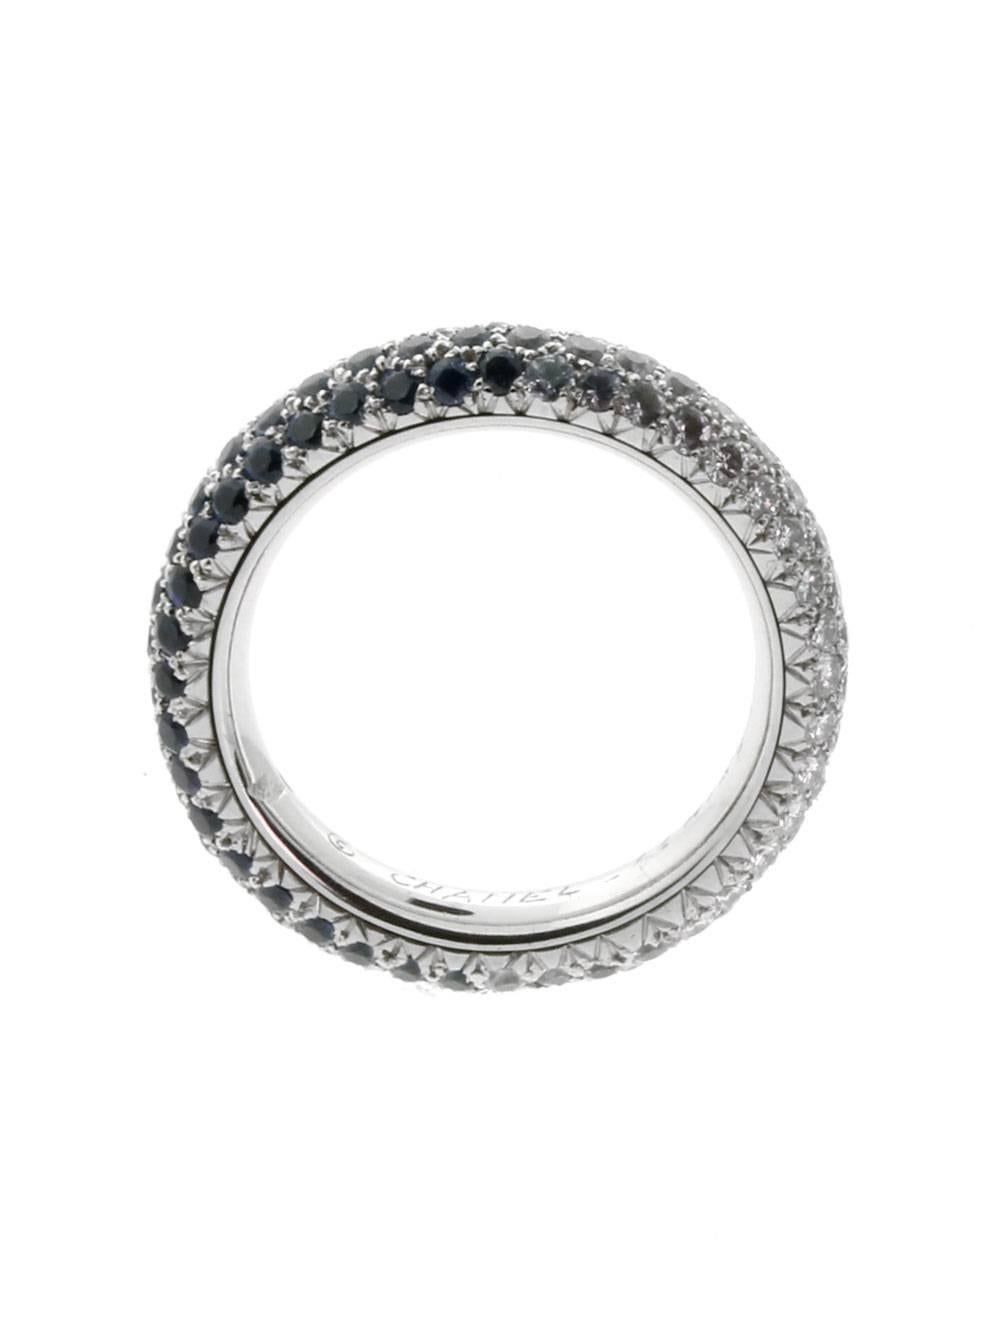 Magnifique bague d'éternité authentique de Chanel sertie des plus beaux diamants ronds de taille brillant de Chanel, et de saphirs en or blanc 18k.

Taille : UE 55 / US 6
Dimensions : Largeur 4mm (.15″ pouces)

Numéro d'inventaire : 0000038